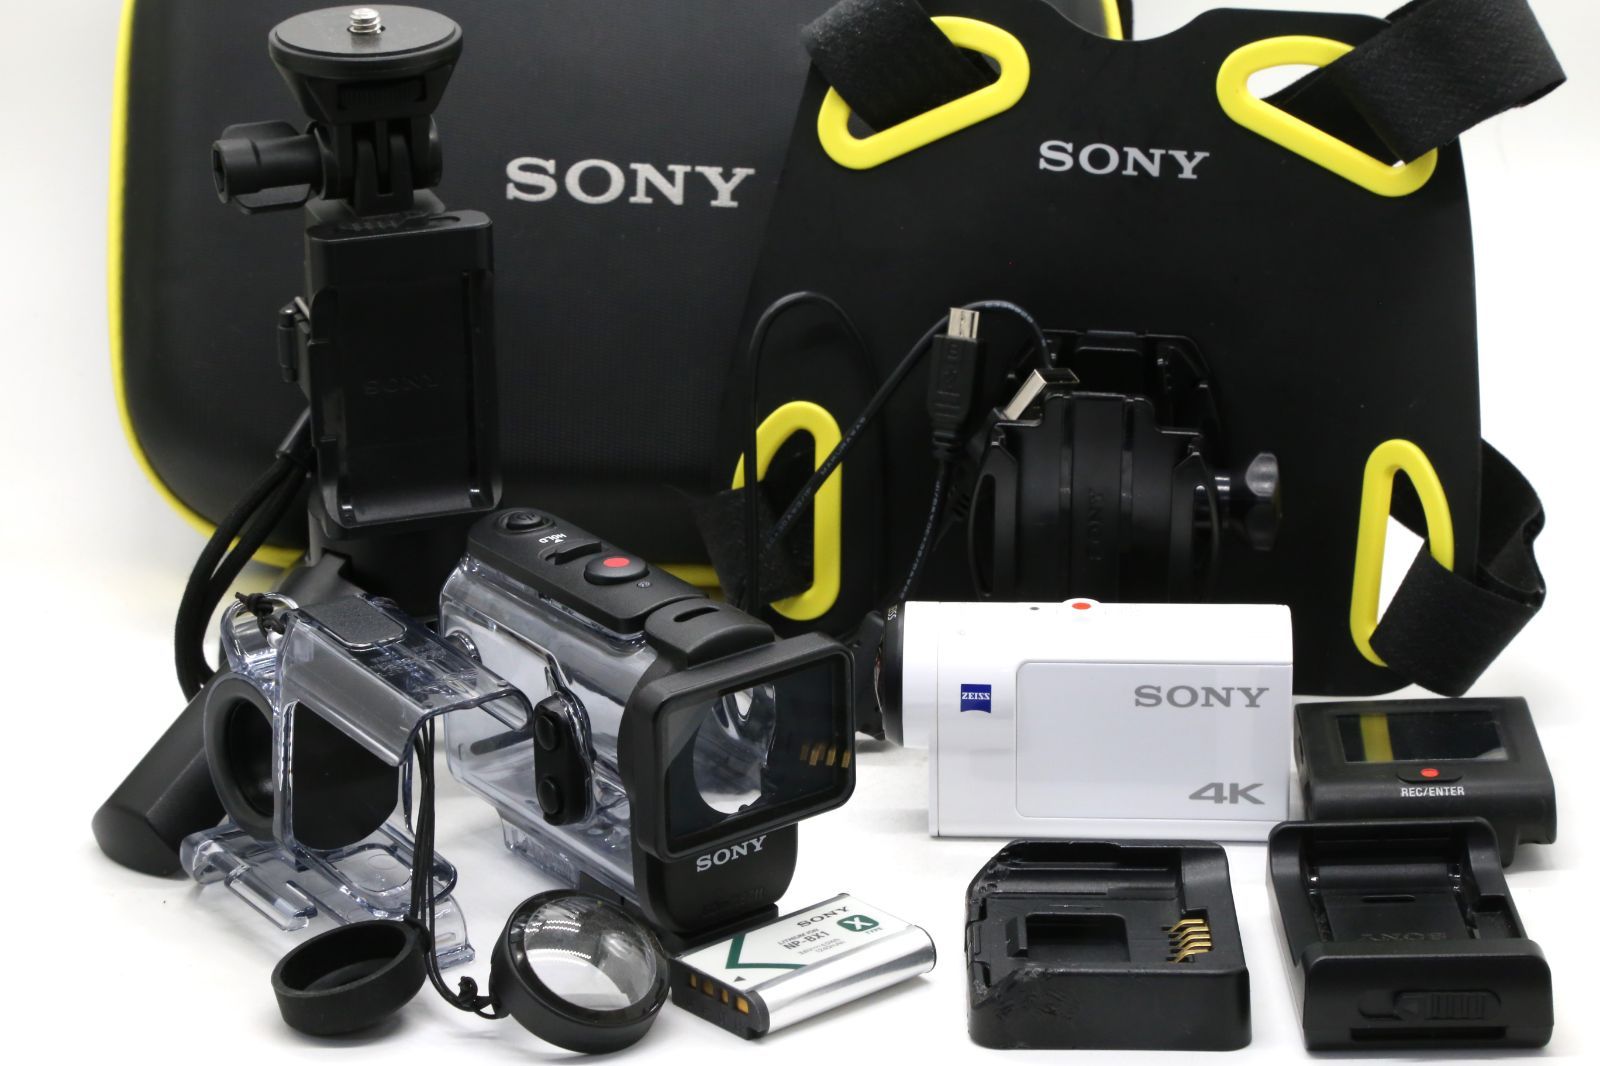 ソニー ウエアラブルカメラ アクションカム 4K+空間光学ブレ補正搭載